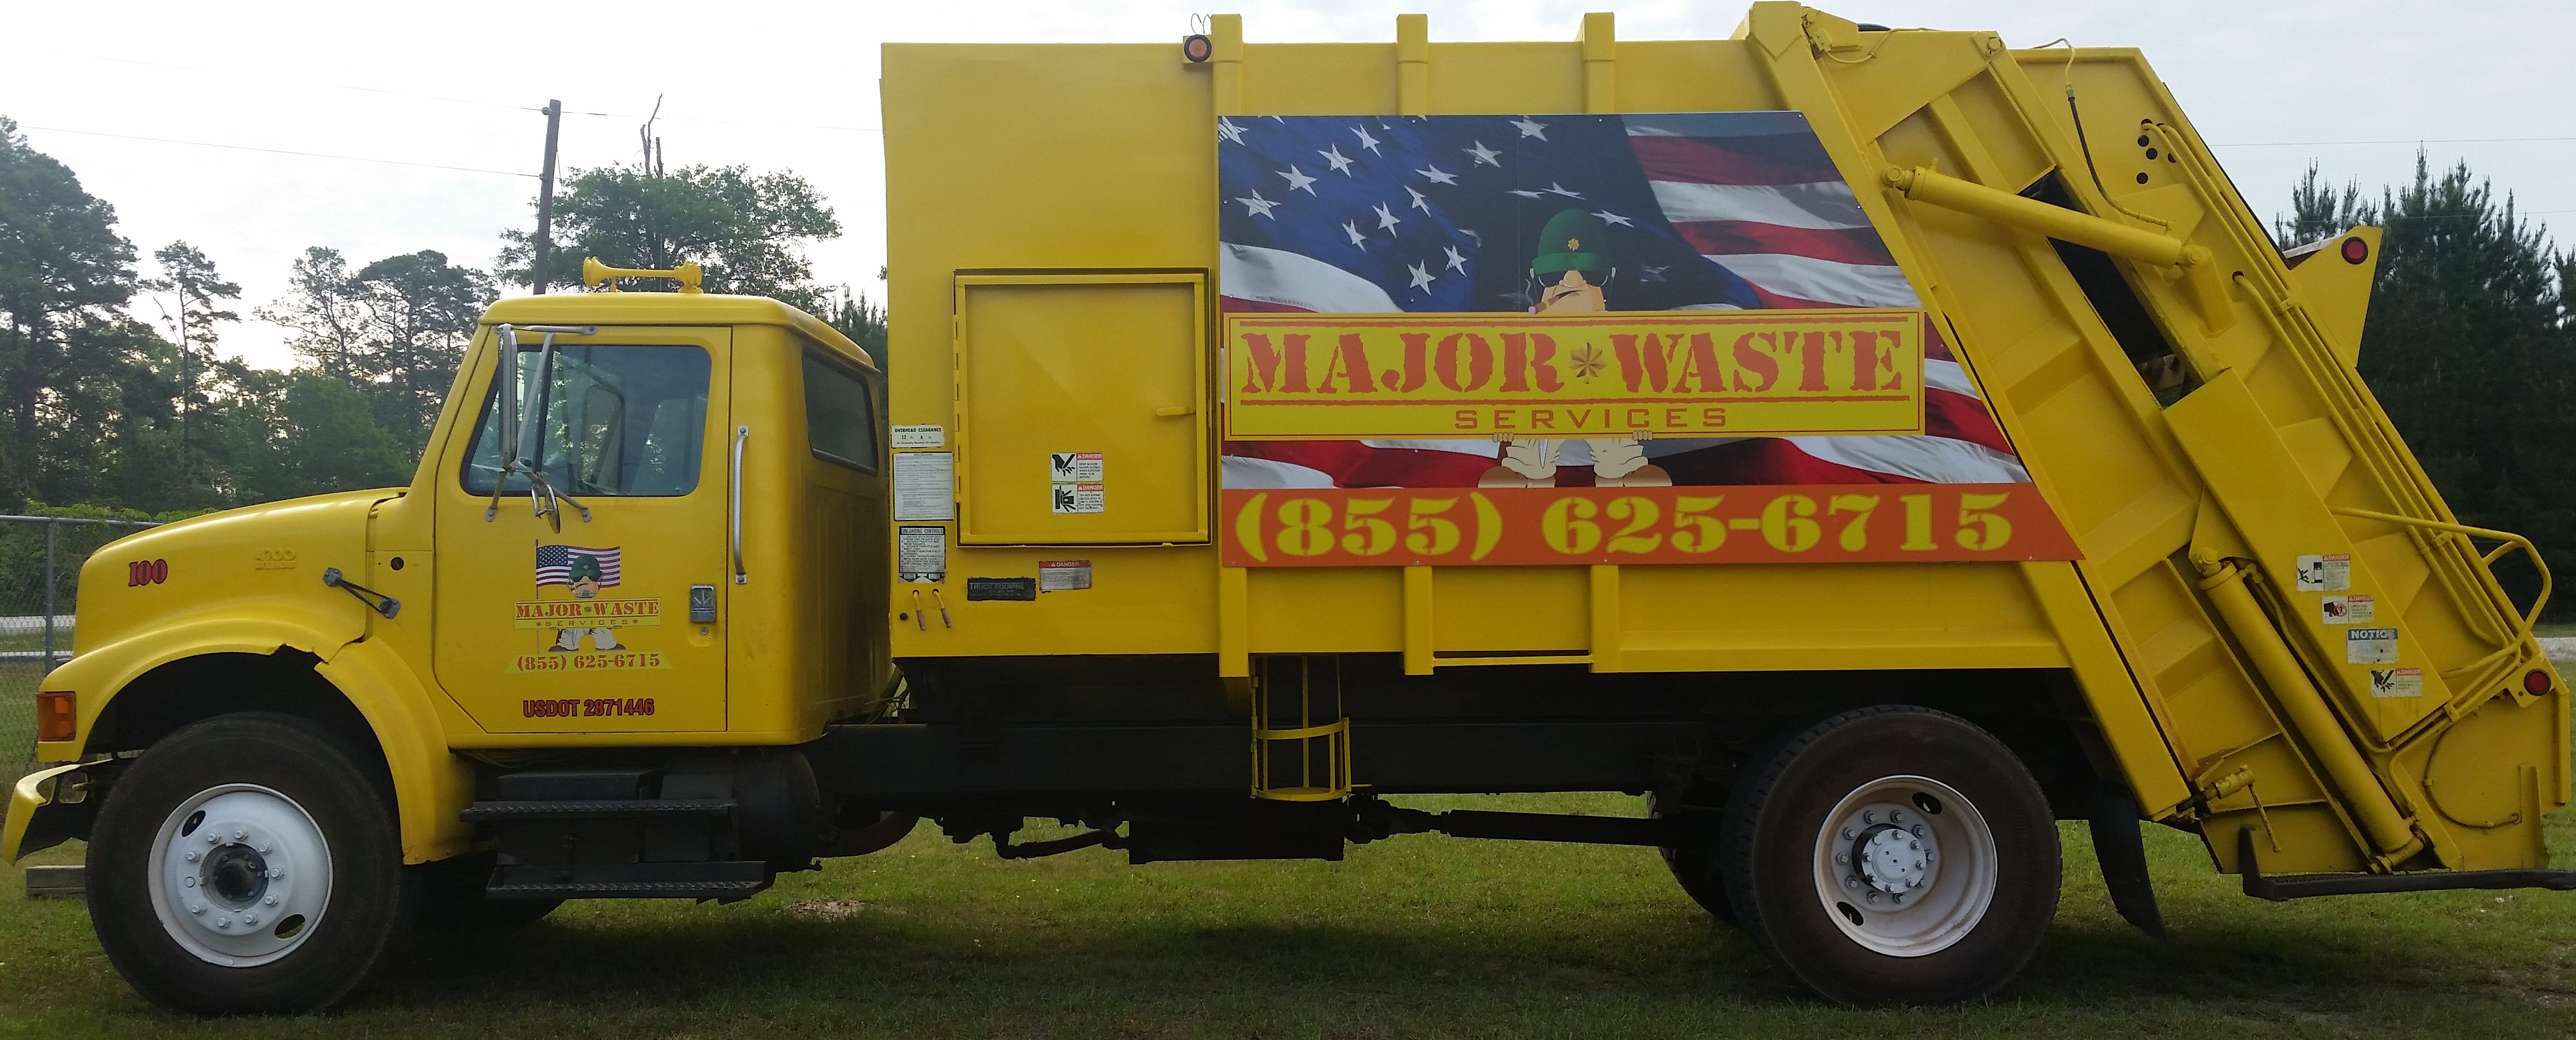 Major Waste Services Conroe, TX 77306